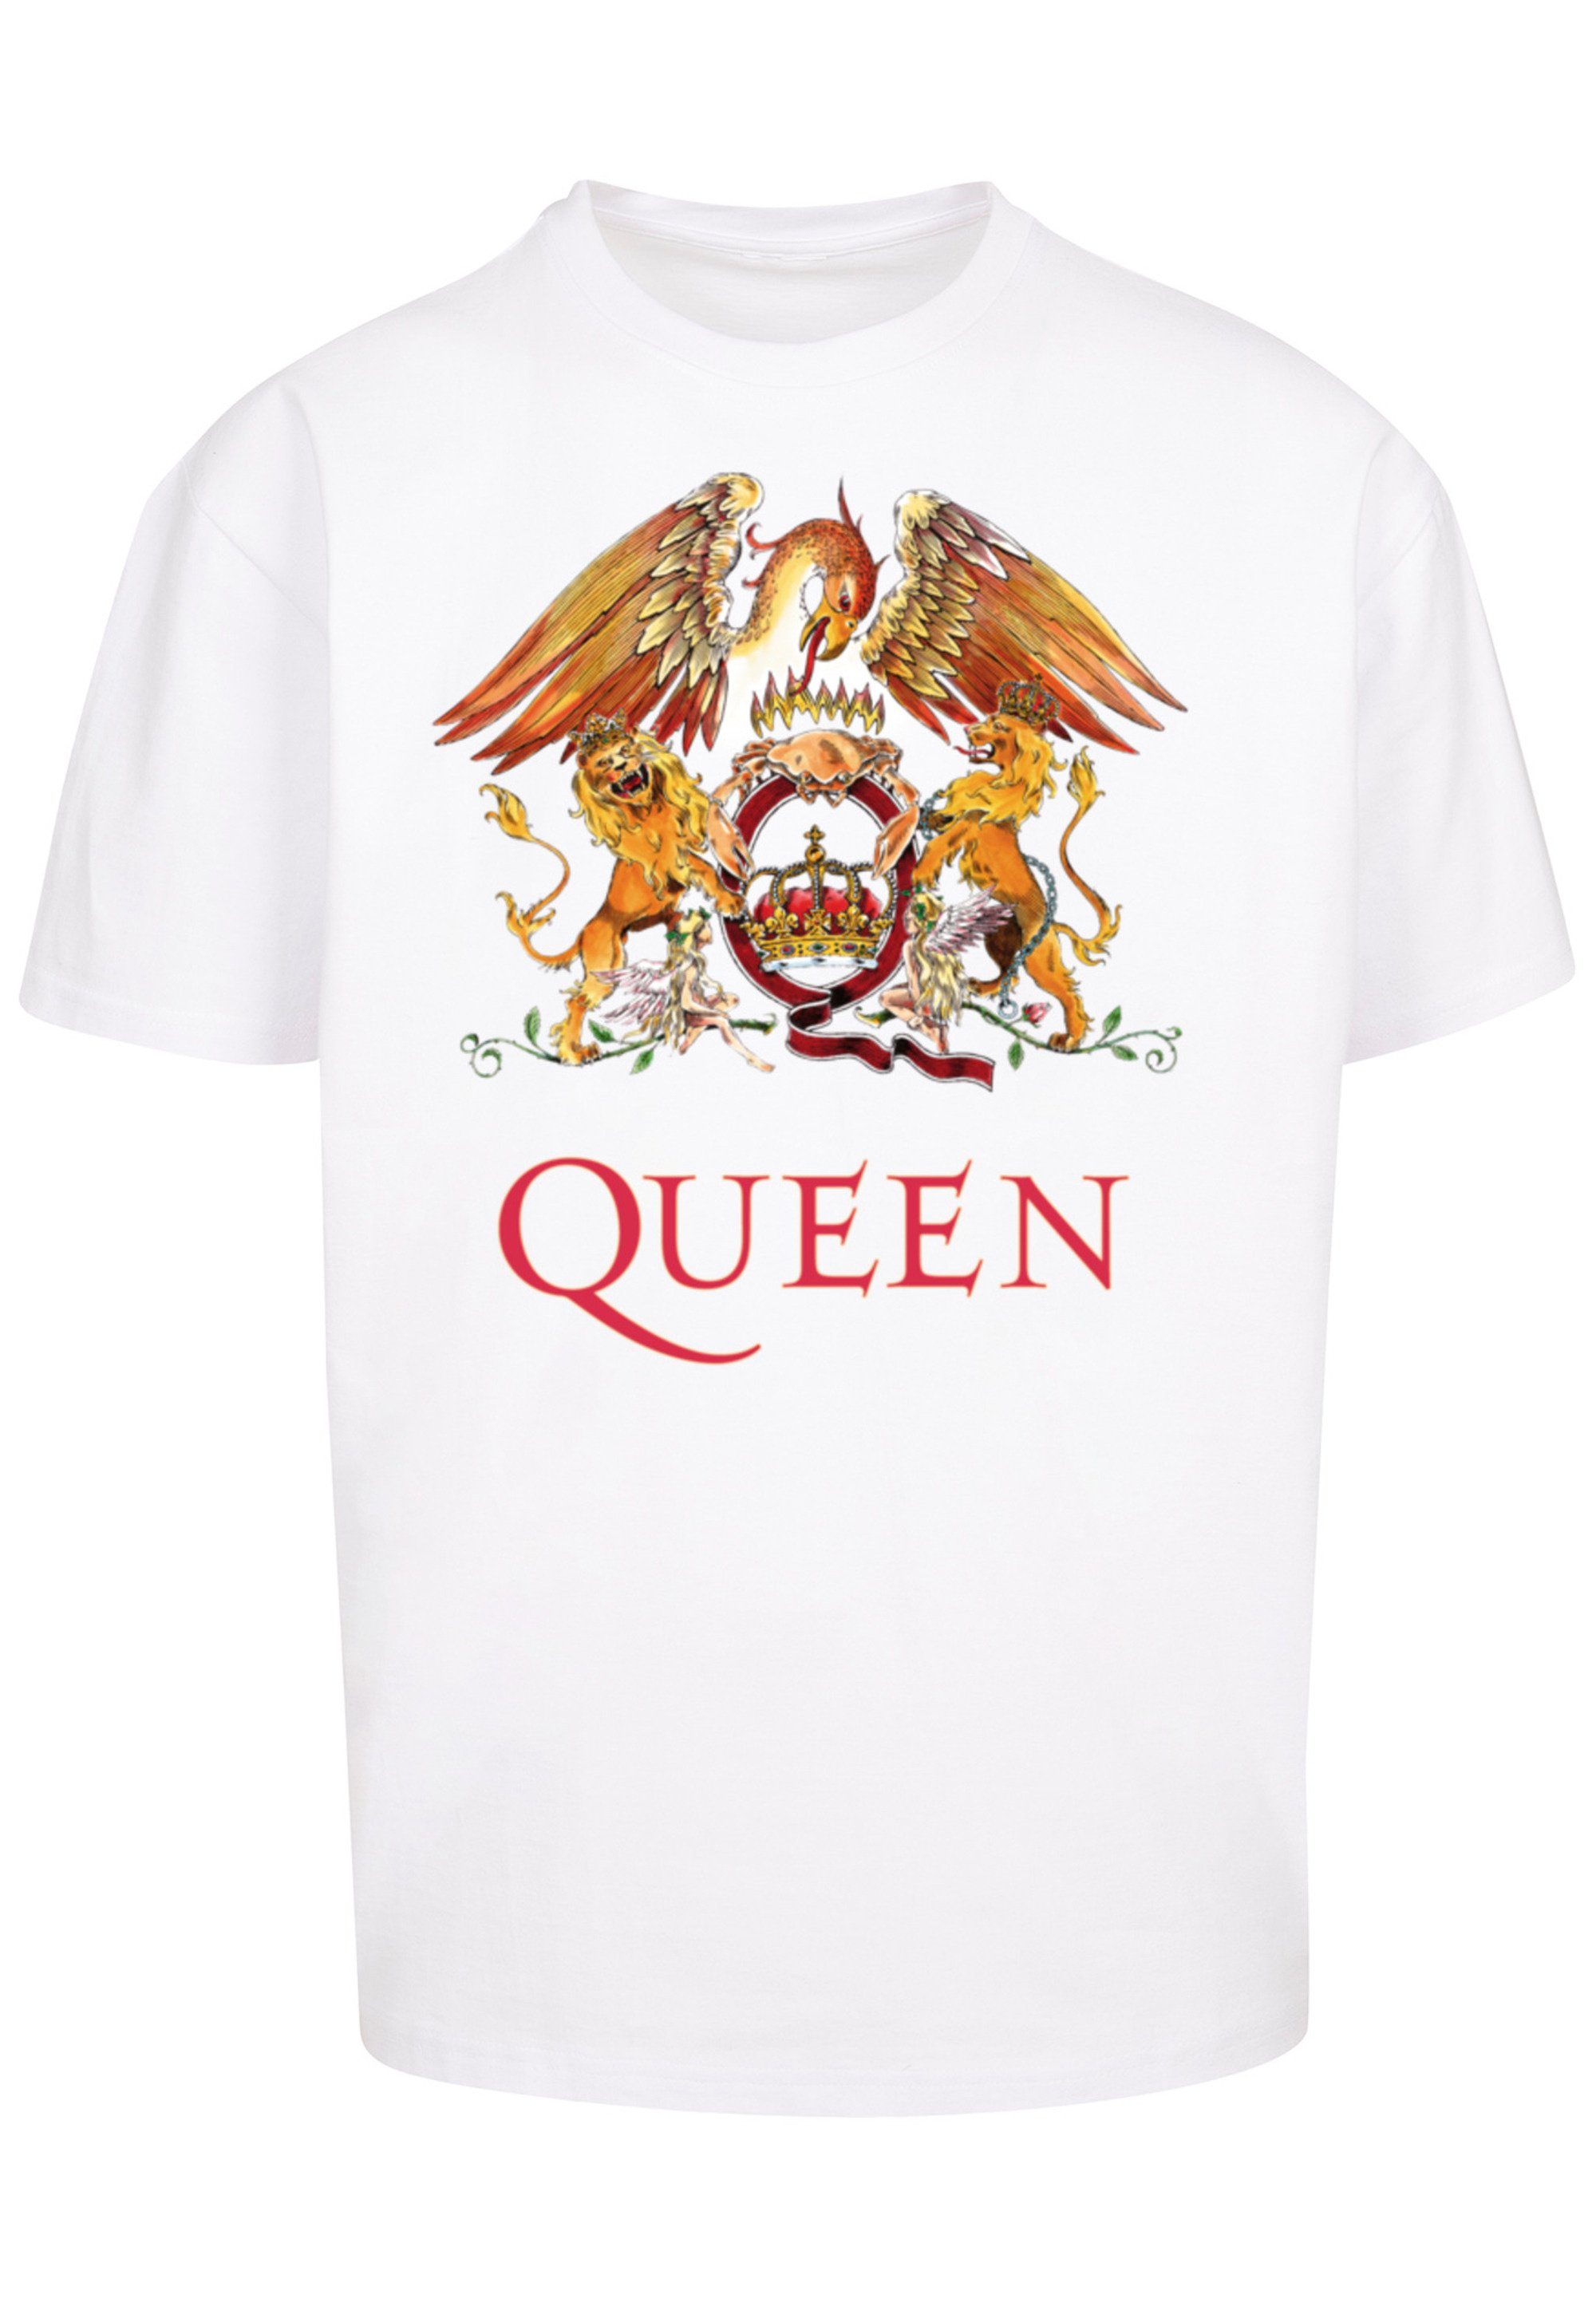 T-Shirt Black weiß F4NT4STIC Print Crest Classic Rockband Queen